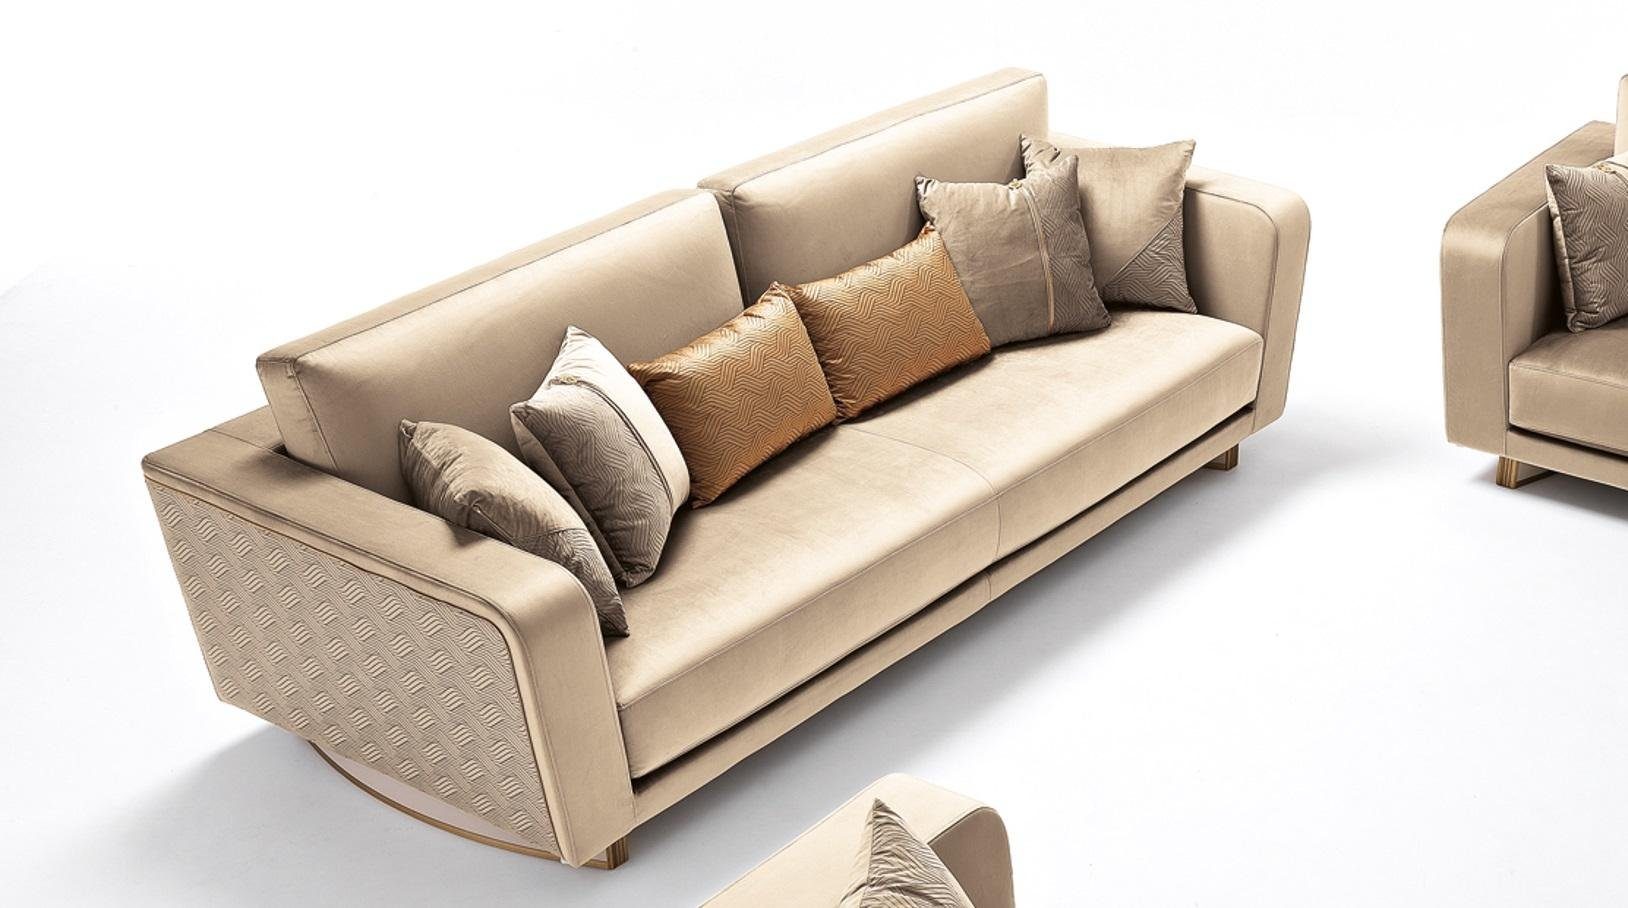 JVmoebel Sofa Design Dreisitzer Couch Polster Sofa Modern 3er Sofa, Made in Europe | Alle Sofas